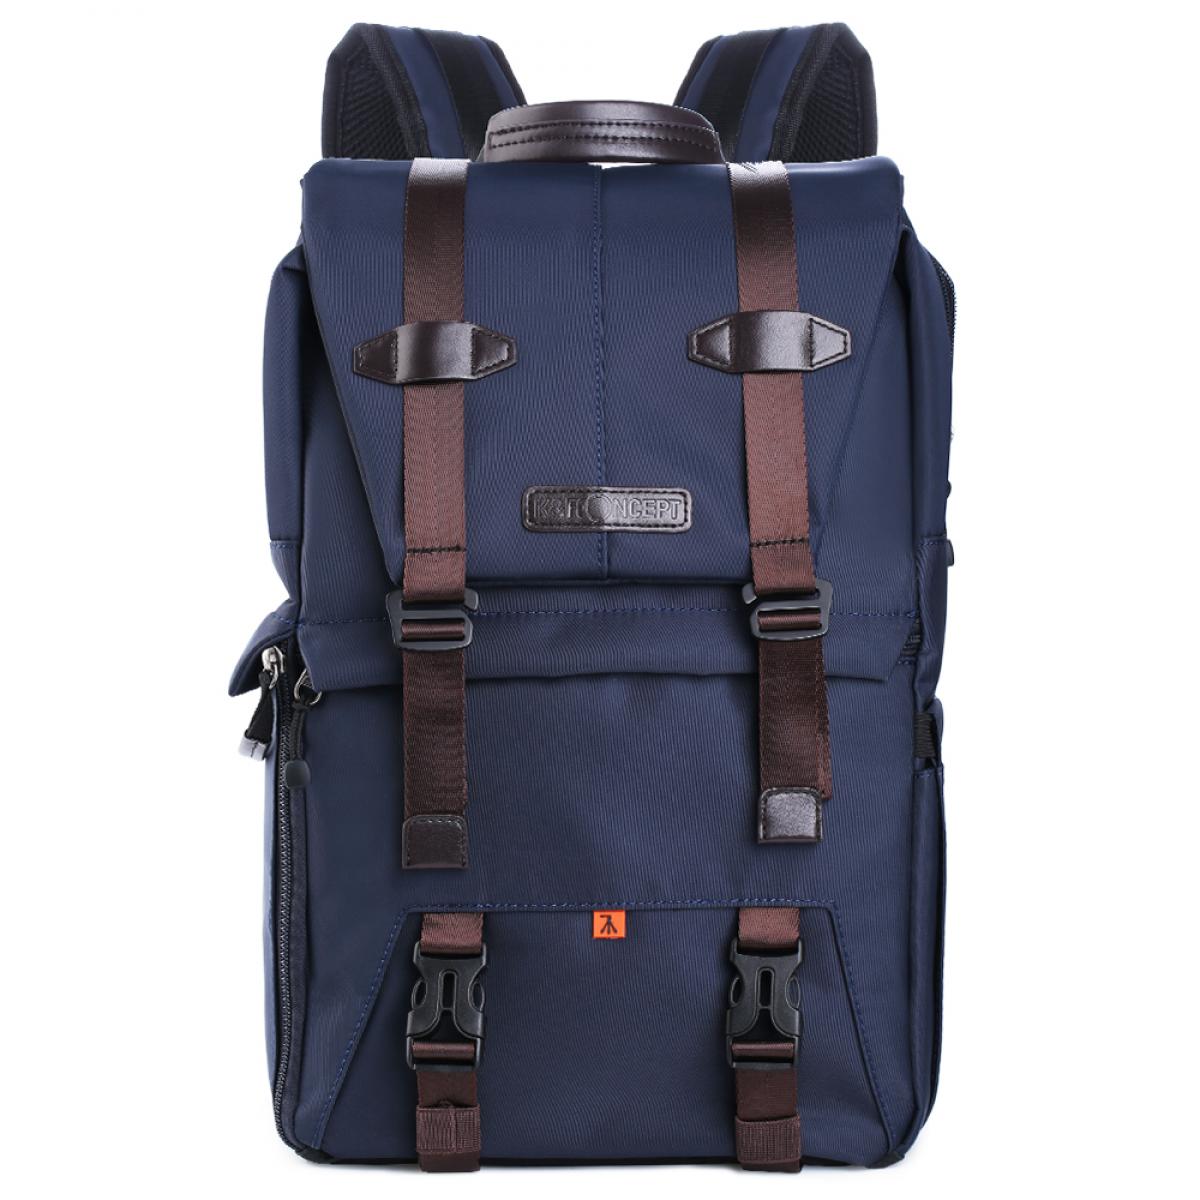 K&F Concept Navy 20L Backpack